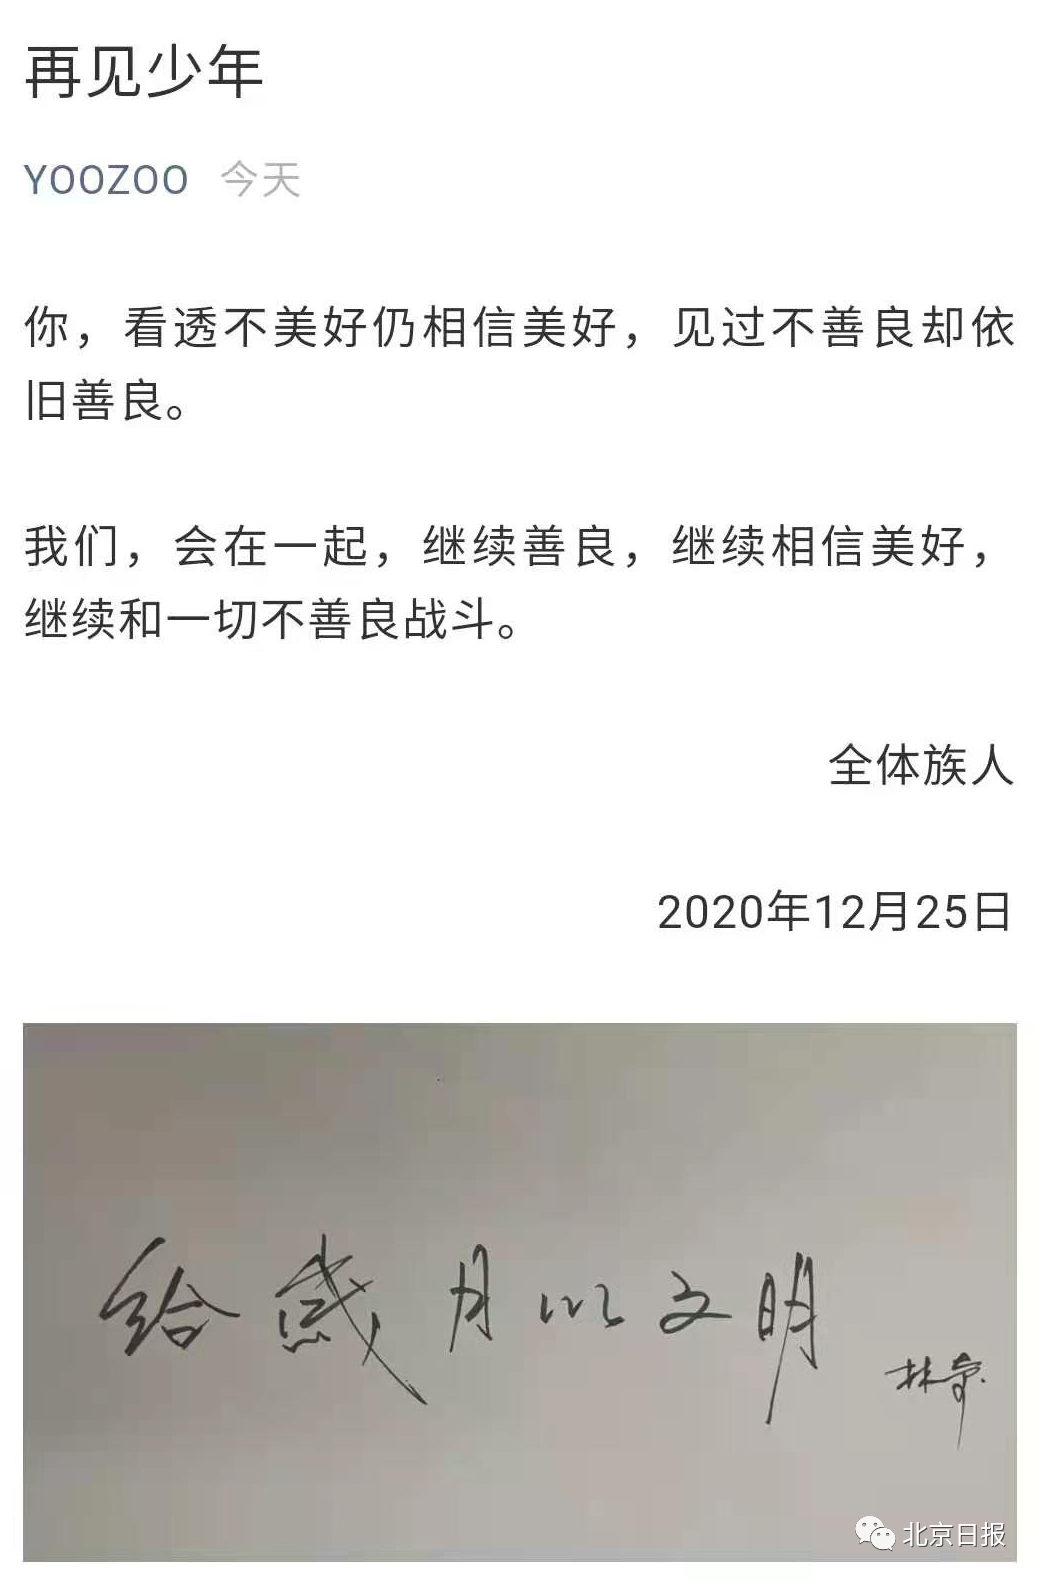 董事长去世游族公司门前摆满花束医生透露抢救细节 千龙网 中国首都网